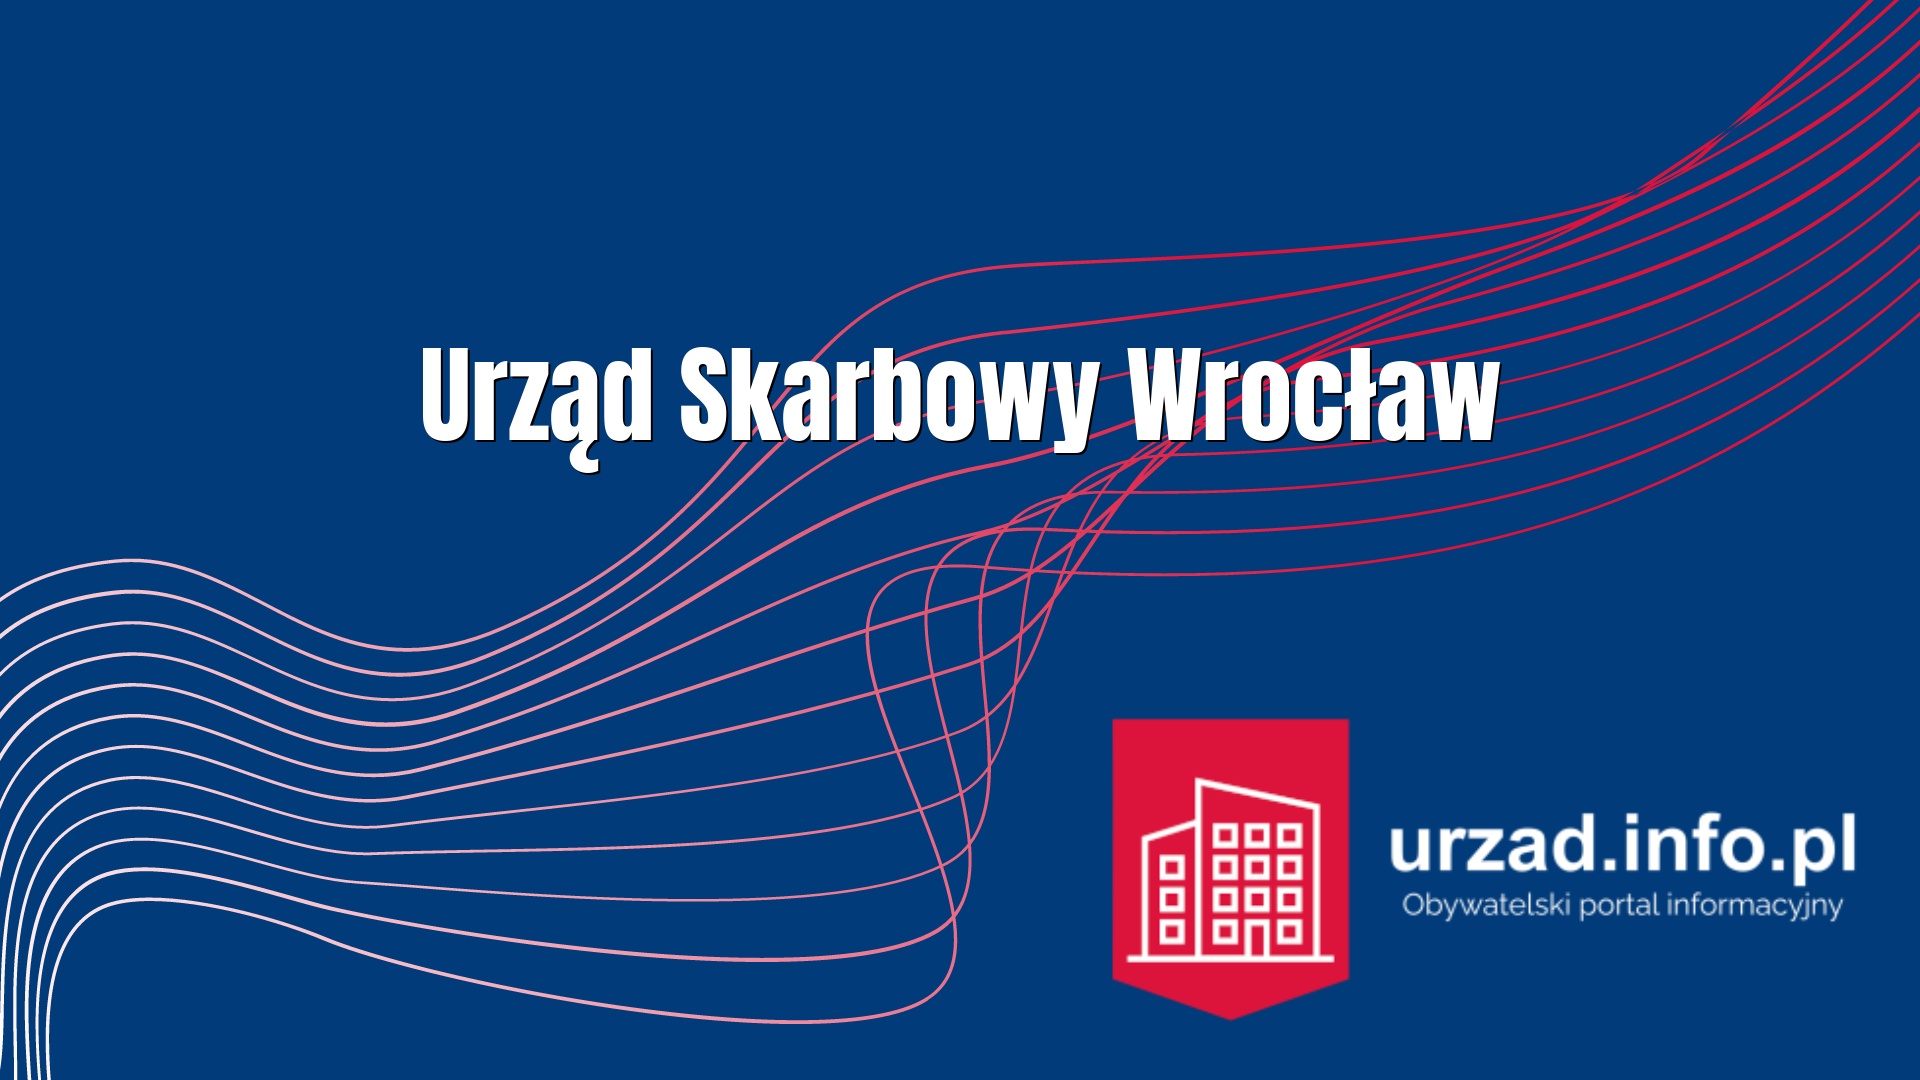 Urząd Skarbowy Wrocław